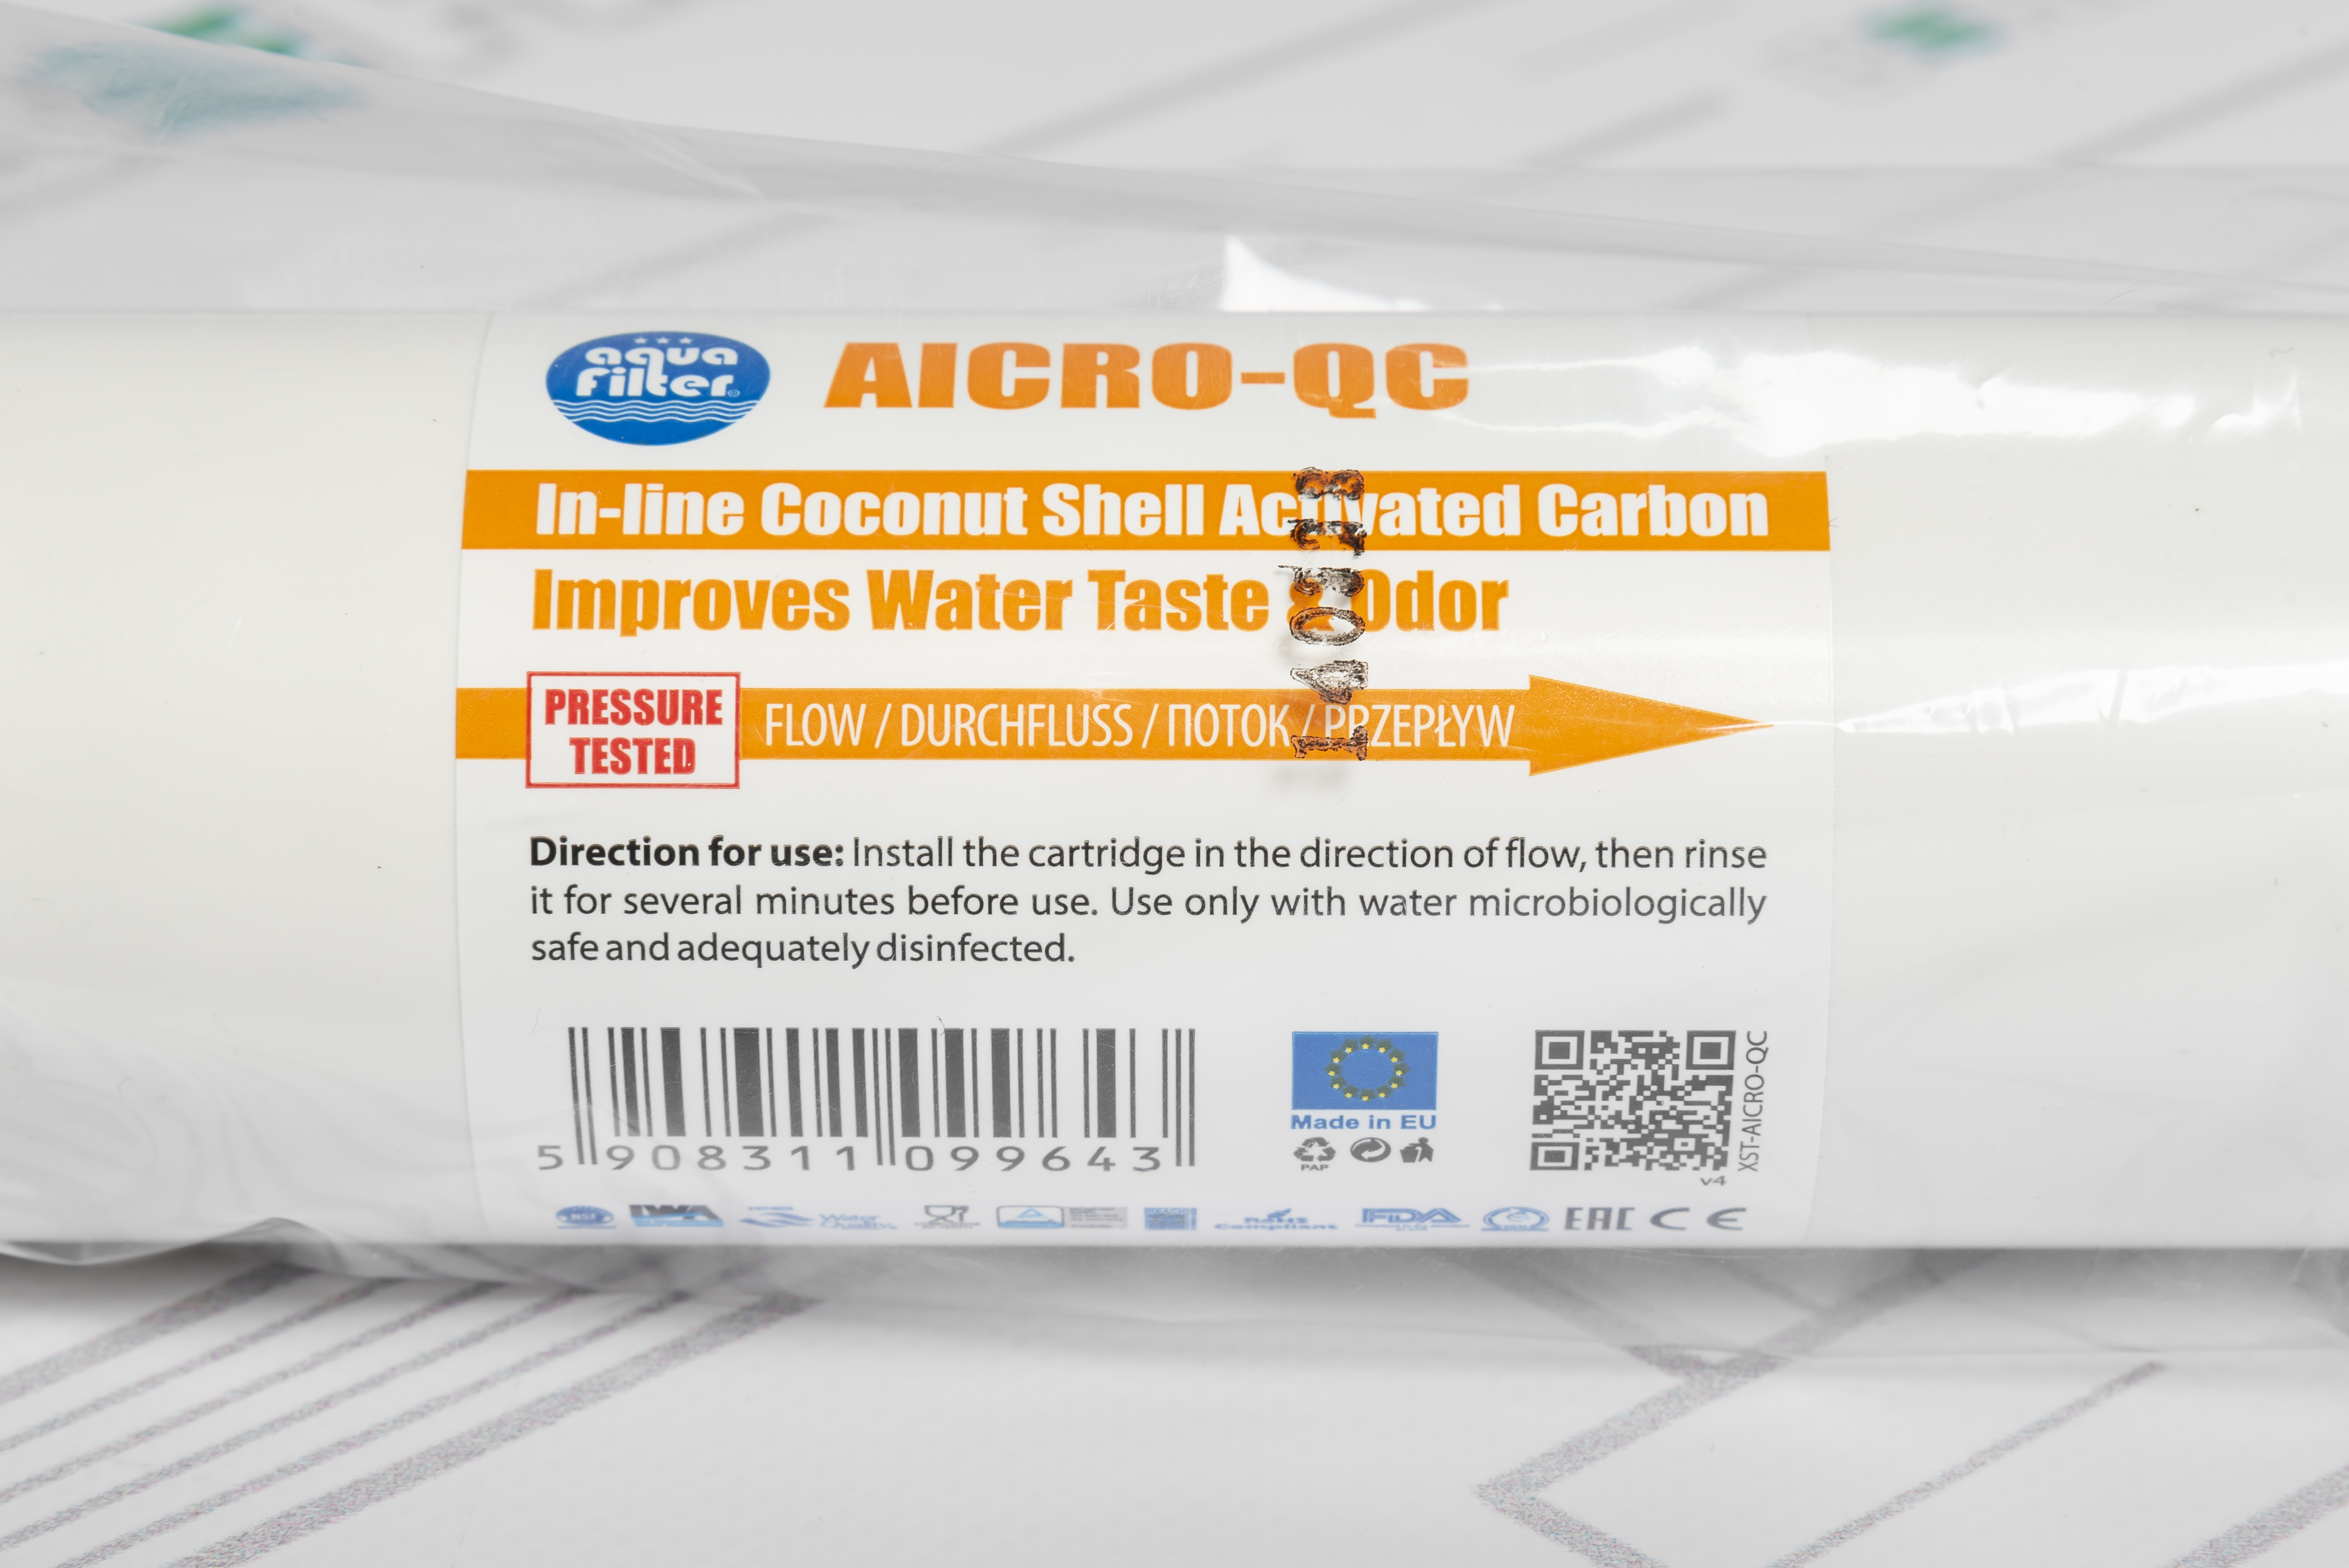 продаём Aquafilter AICRO-QC (Уголь)  в Украине - фото 4